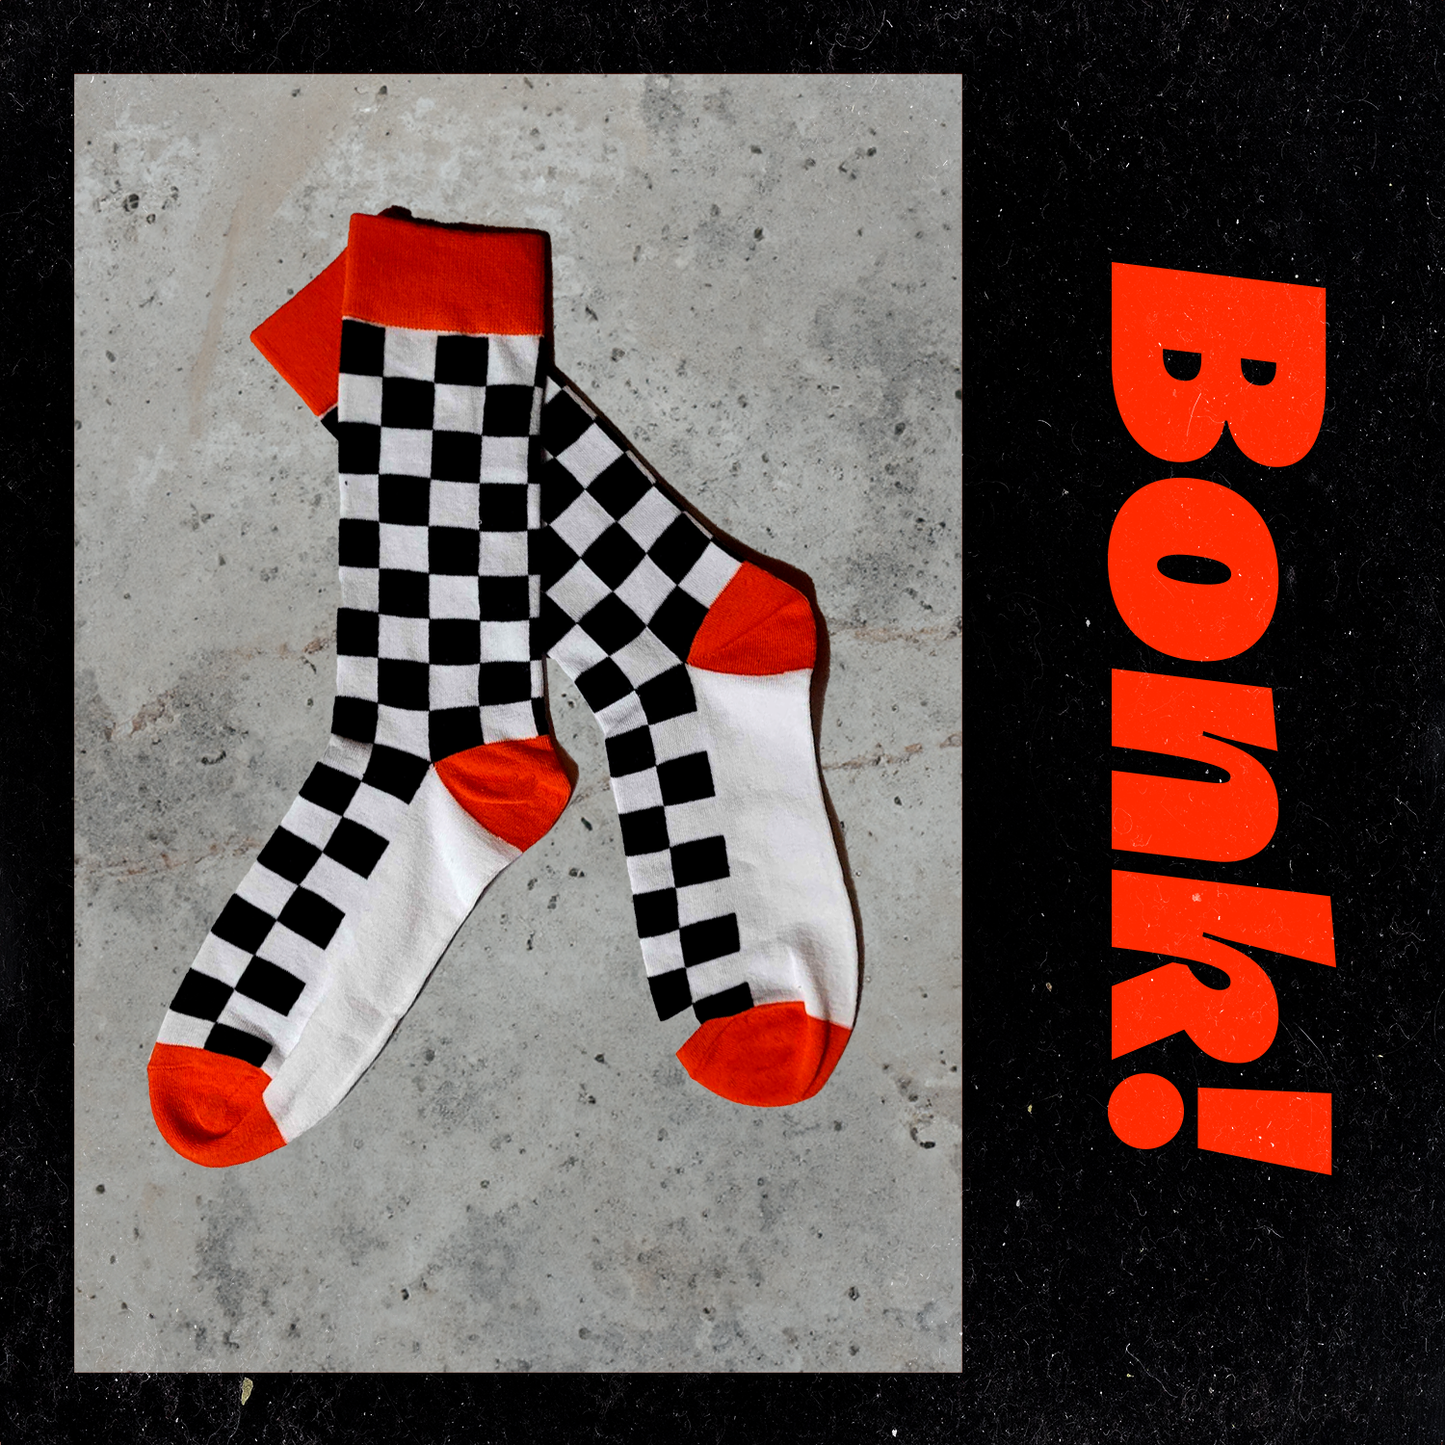 Bonk Checkered Socks